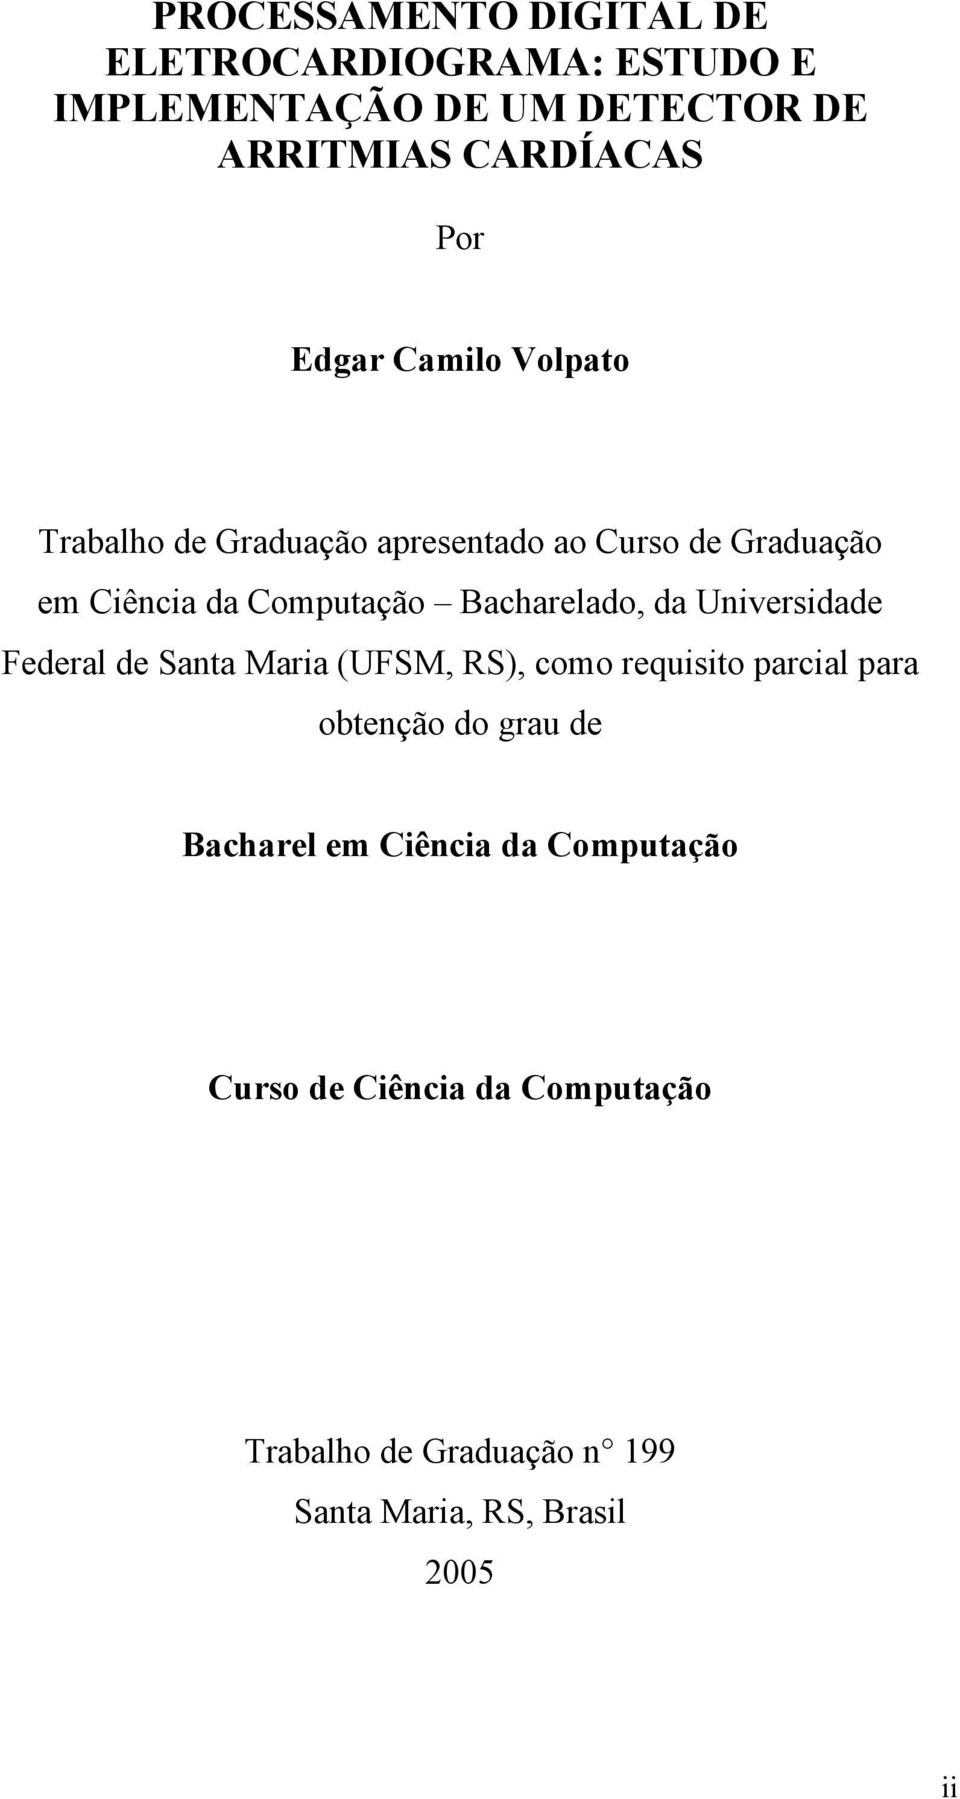 Bacharelado, da Universidade Federal de Santa Maria (UFSM, RS), como requisito parcial para obtenção do grau de